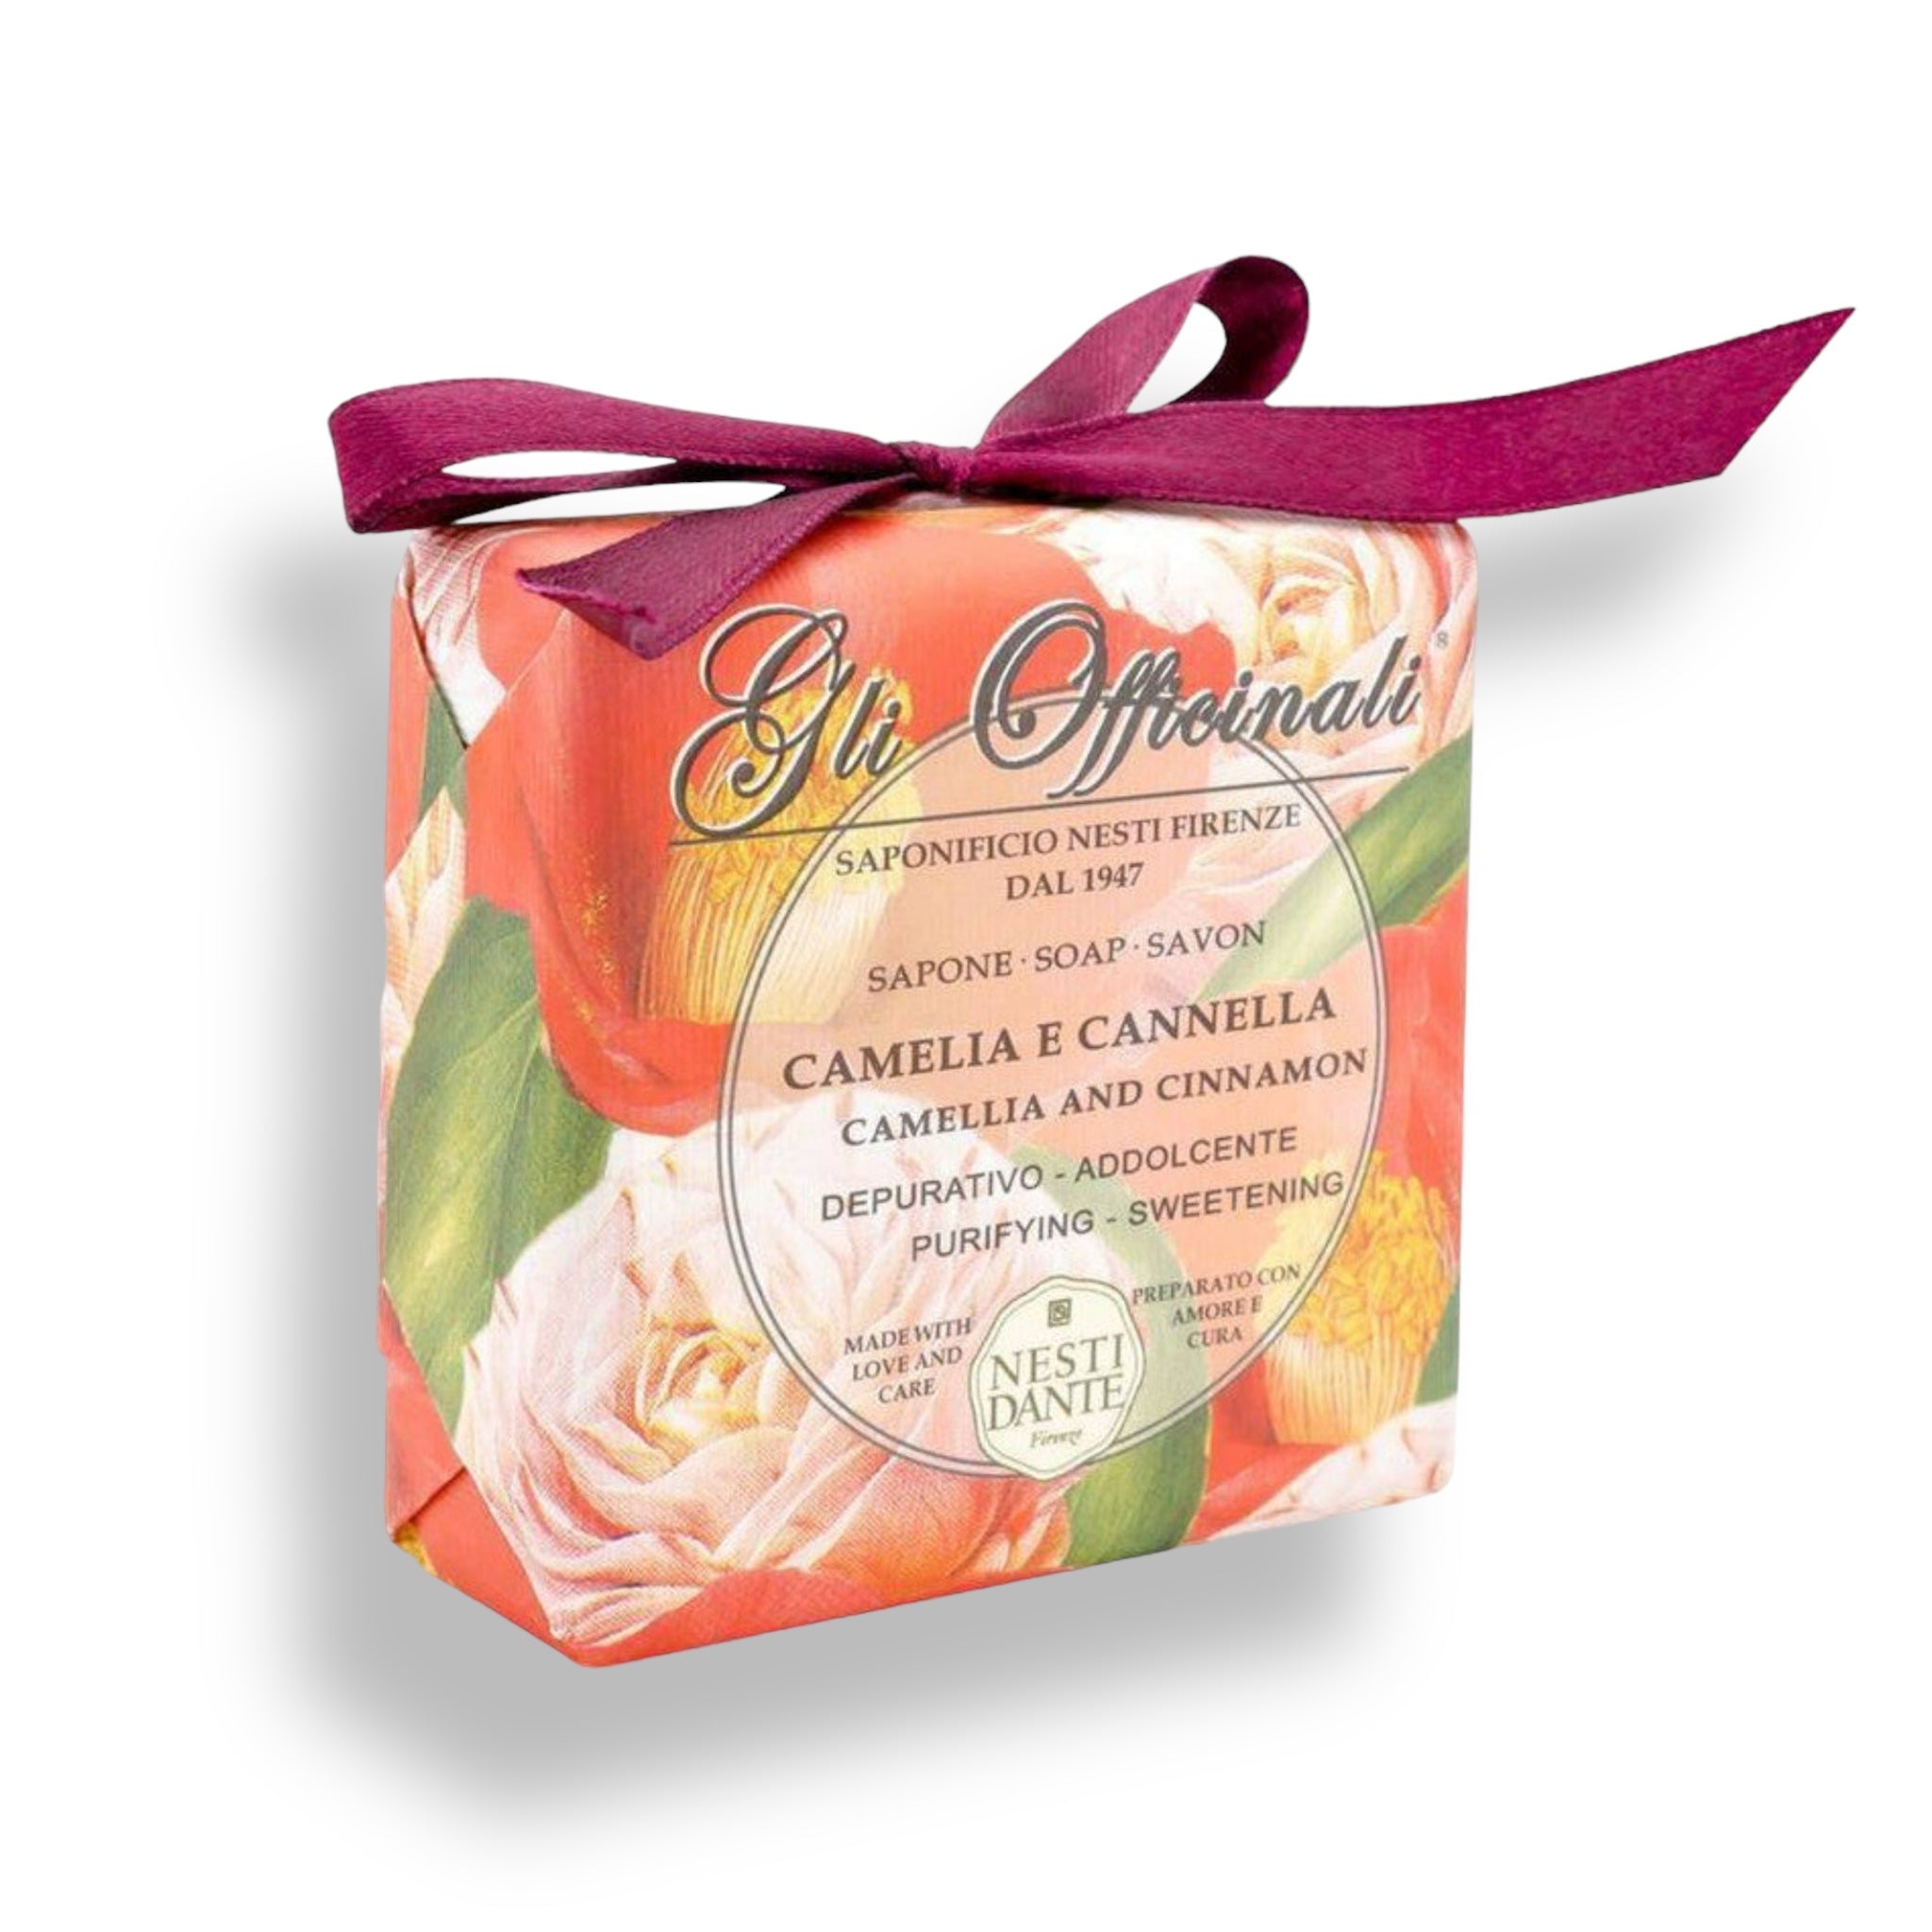 NESTI DANTE Gli Officinali - Camellia and Cinnamon Bar Soap - MerryBath.com